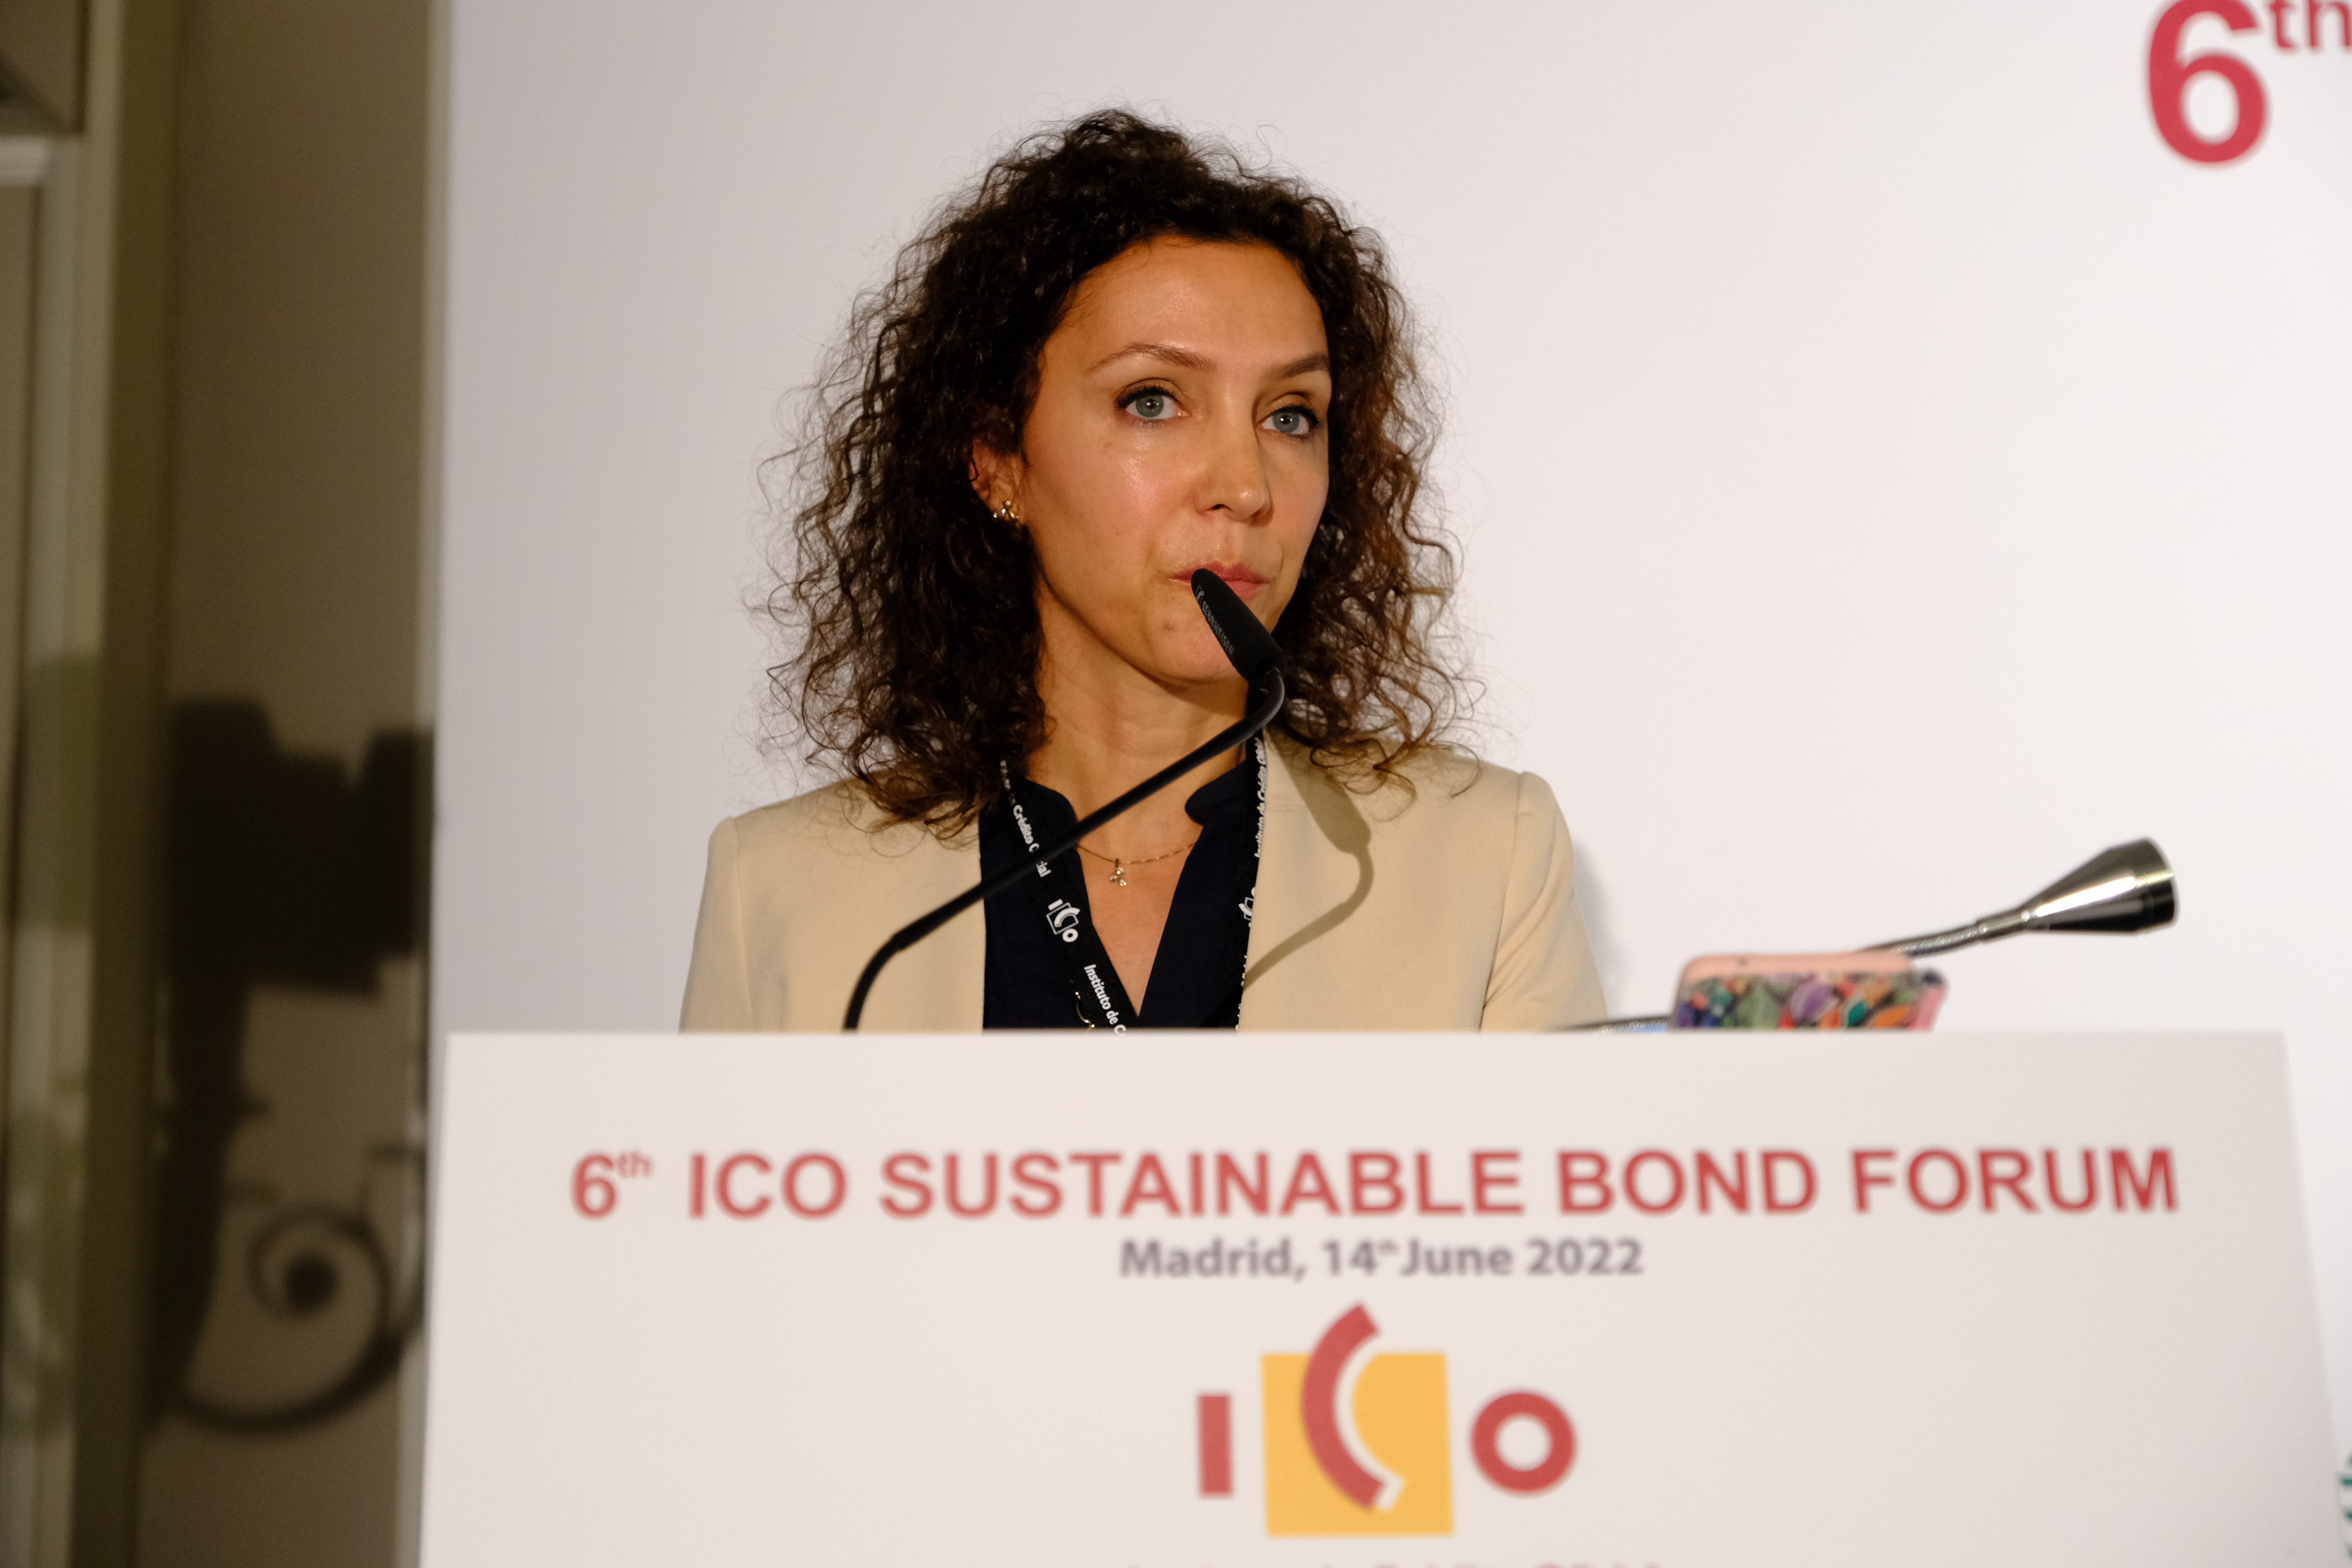 ICO Foro de Bonos Sostenibles 22.06.14